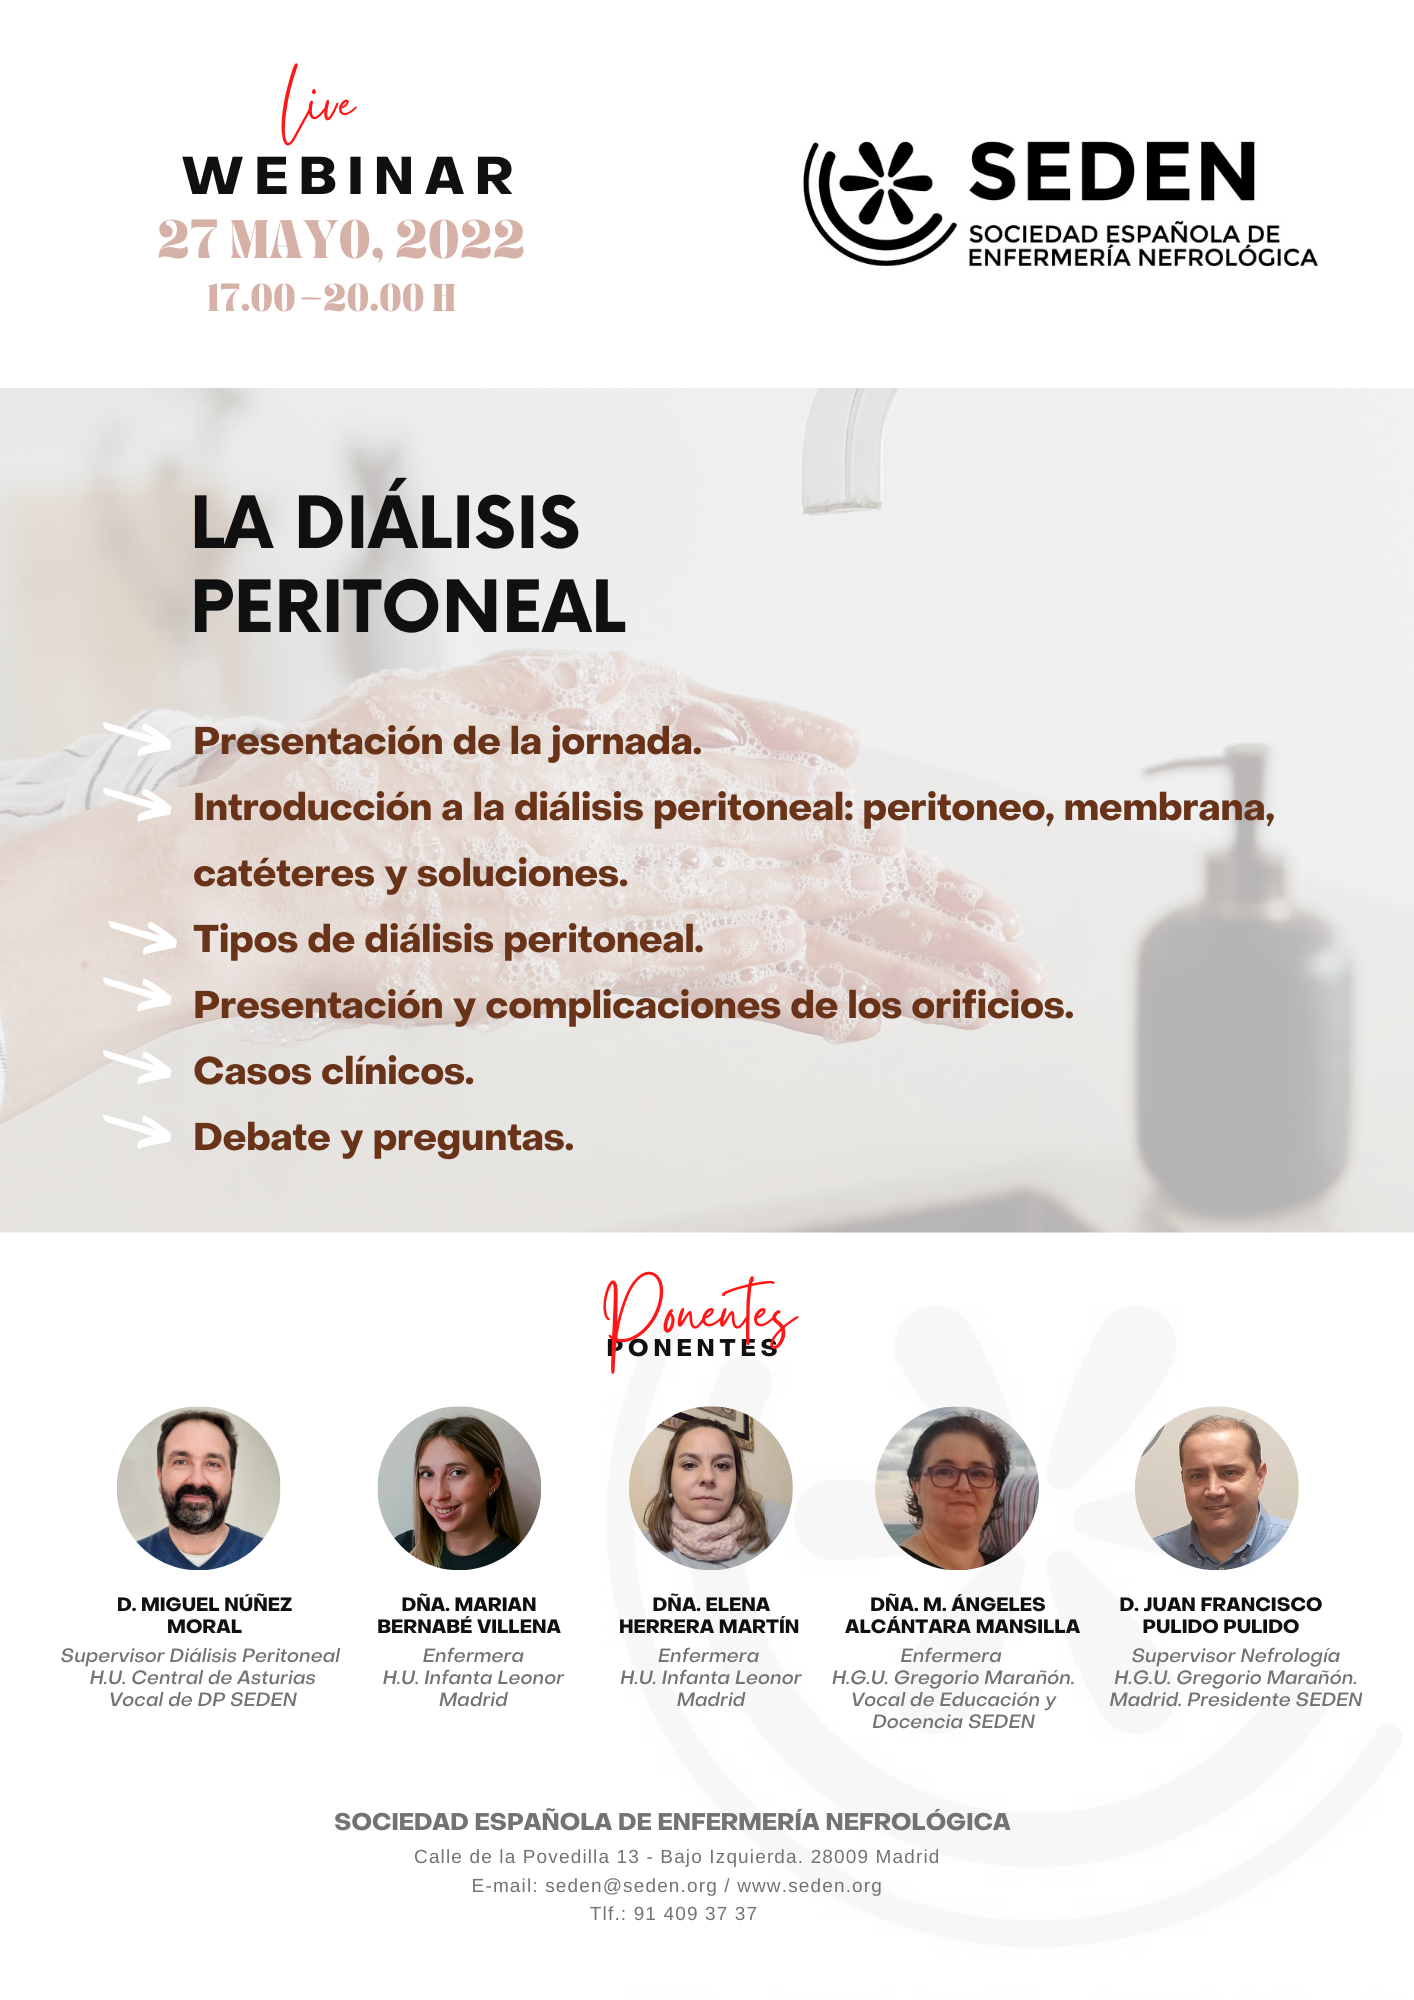 Webinar Online: "LA DIÁLISIS PERITONEAL"